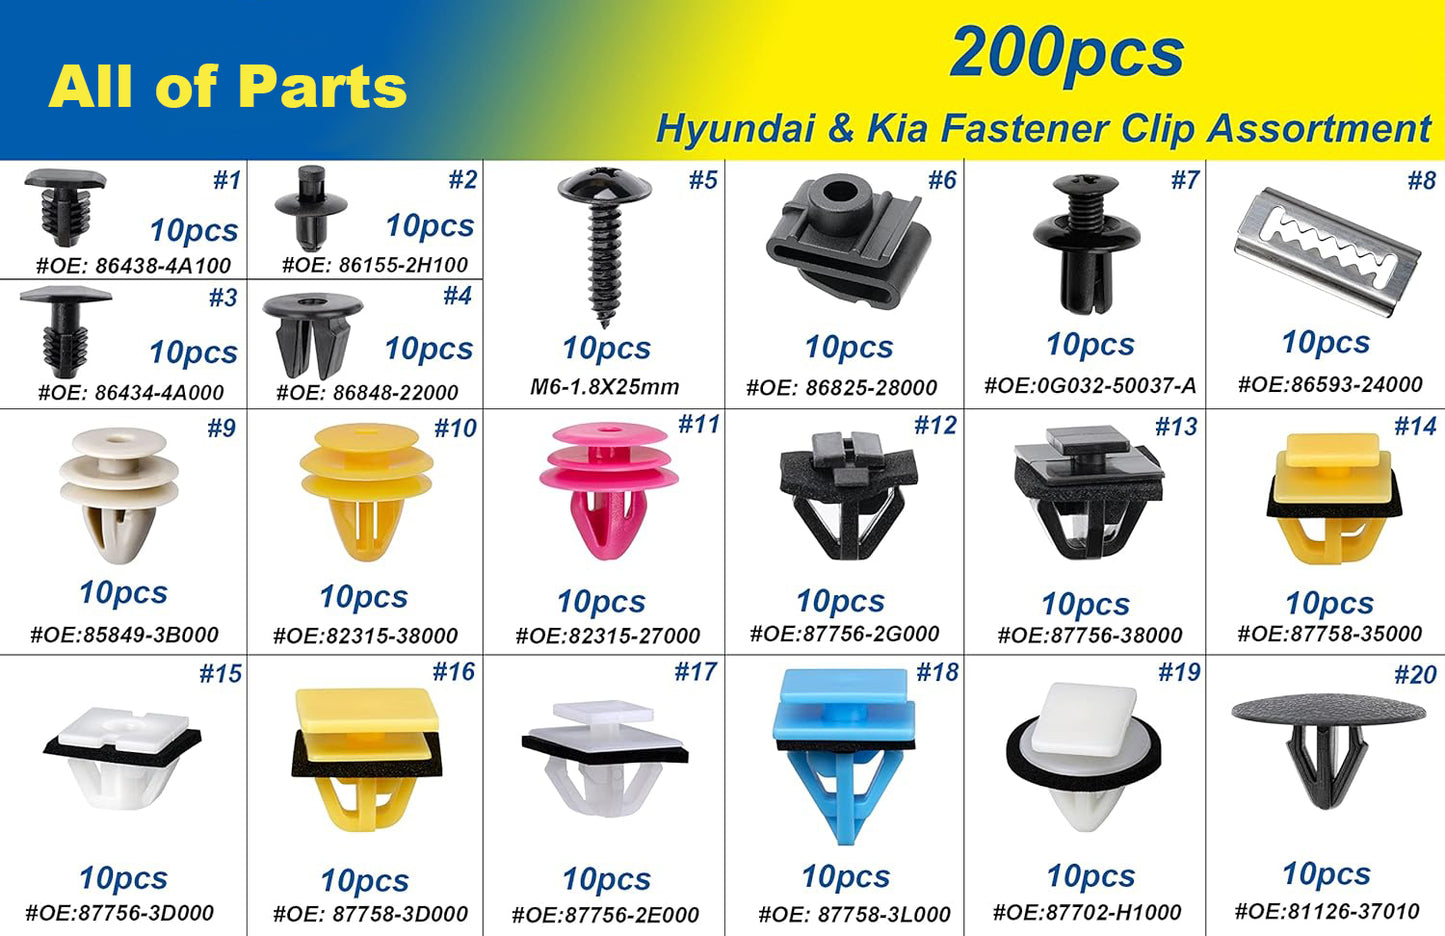 200pcs for Hyundai & Kia Body Interior and Exterior Retainer Fastener Clip Assortment